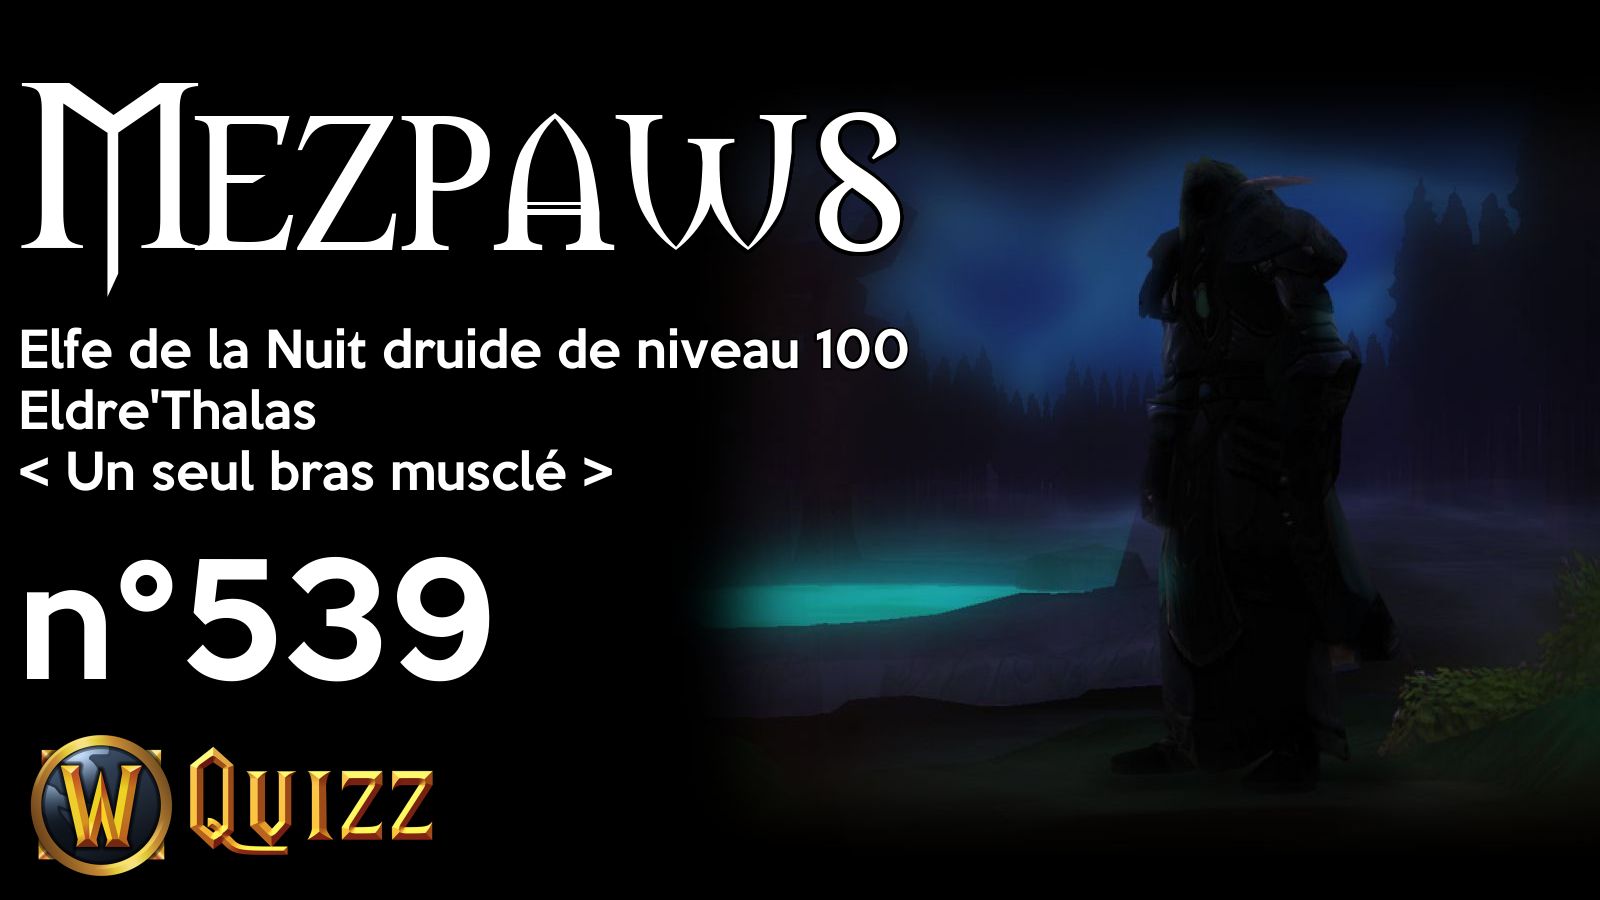 Mezpaws, Elfe de la Nuit druide de niveau 100, Eldre'Thalas